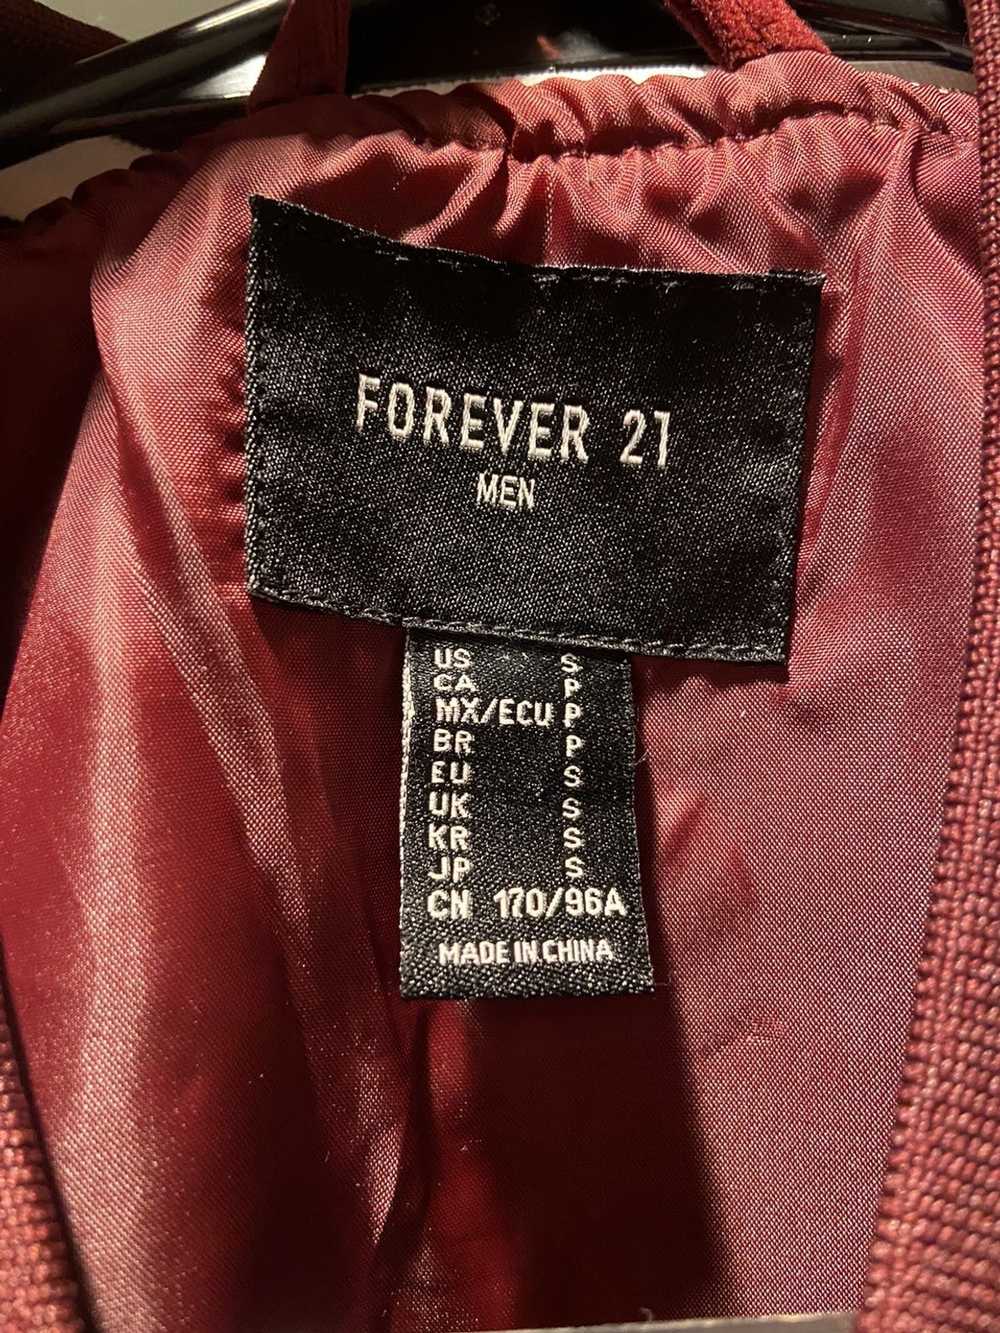 Forever 21 Forever 21 bomber jacket - image 2